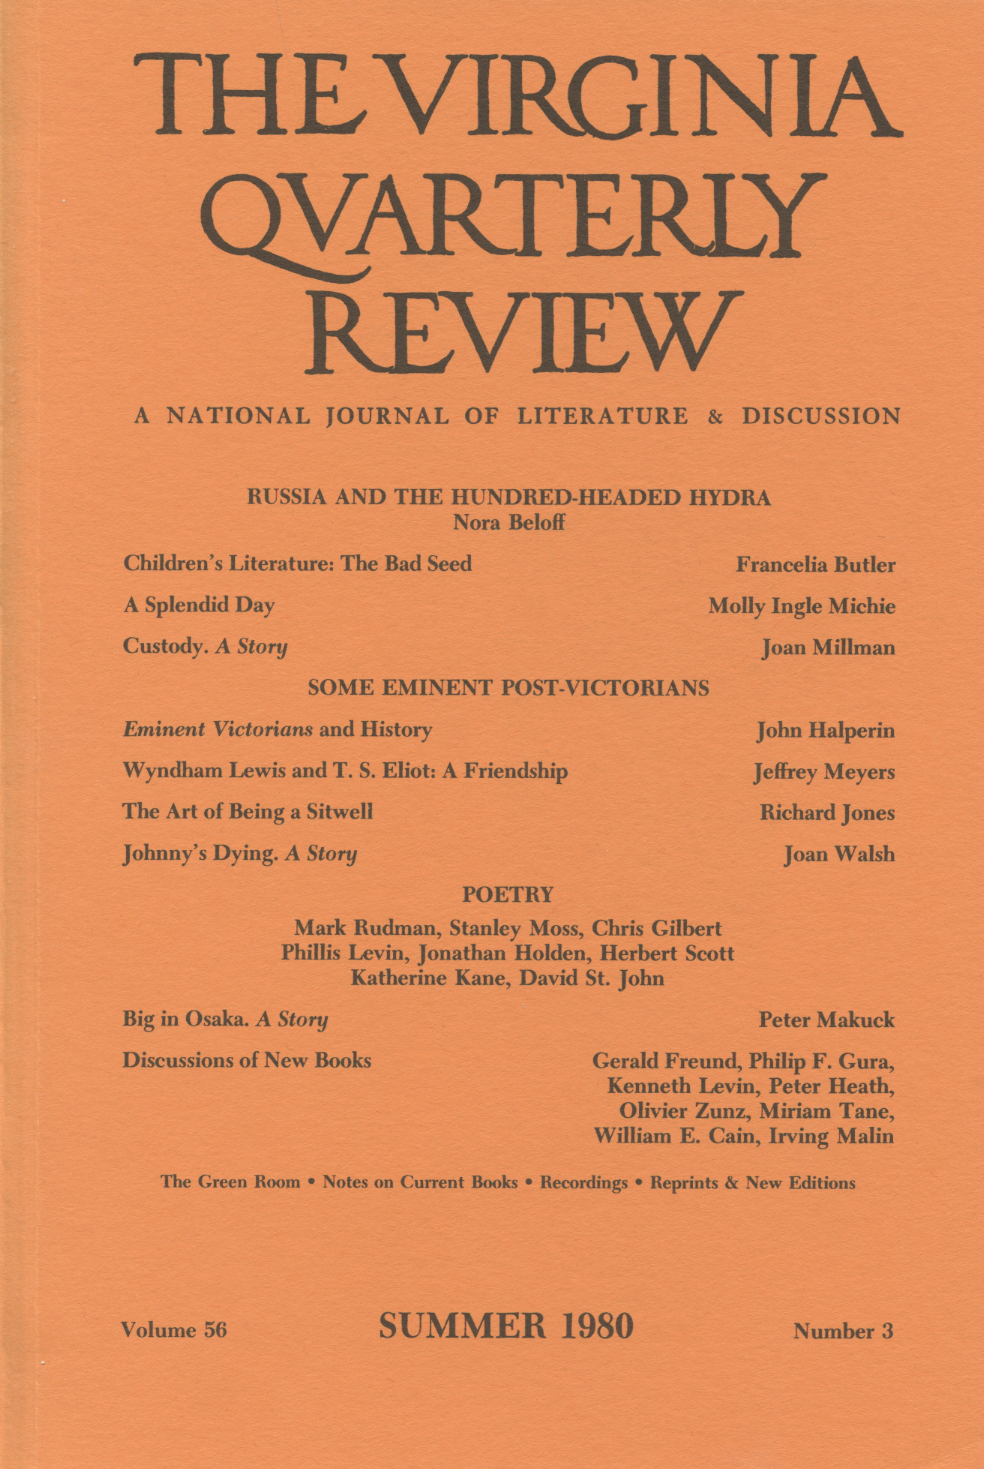 Virginia Quarterly Review, Summer 1980 cover